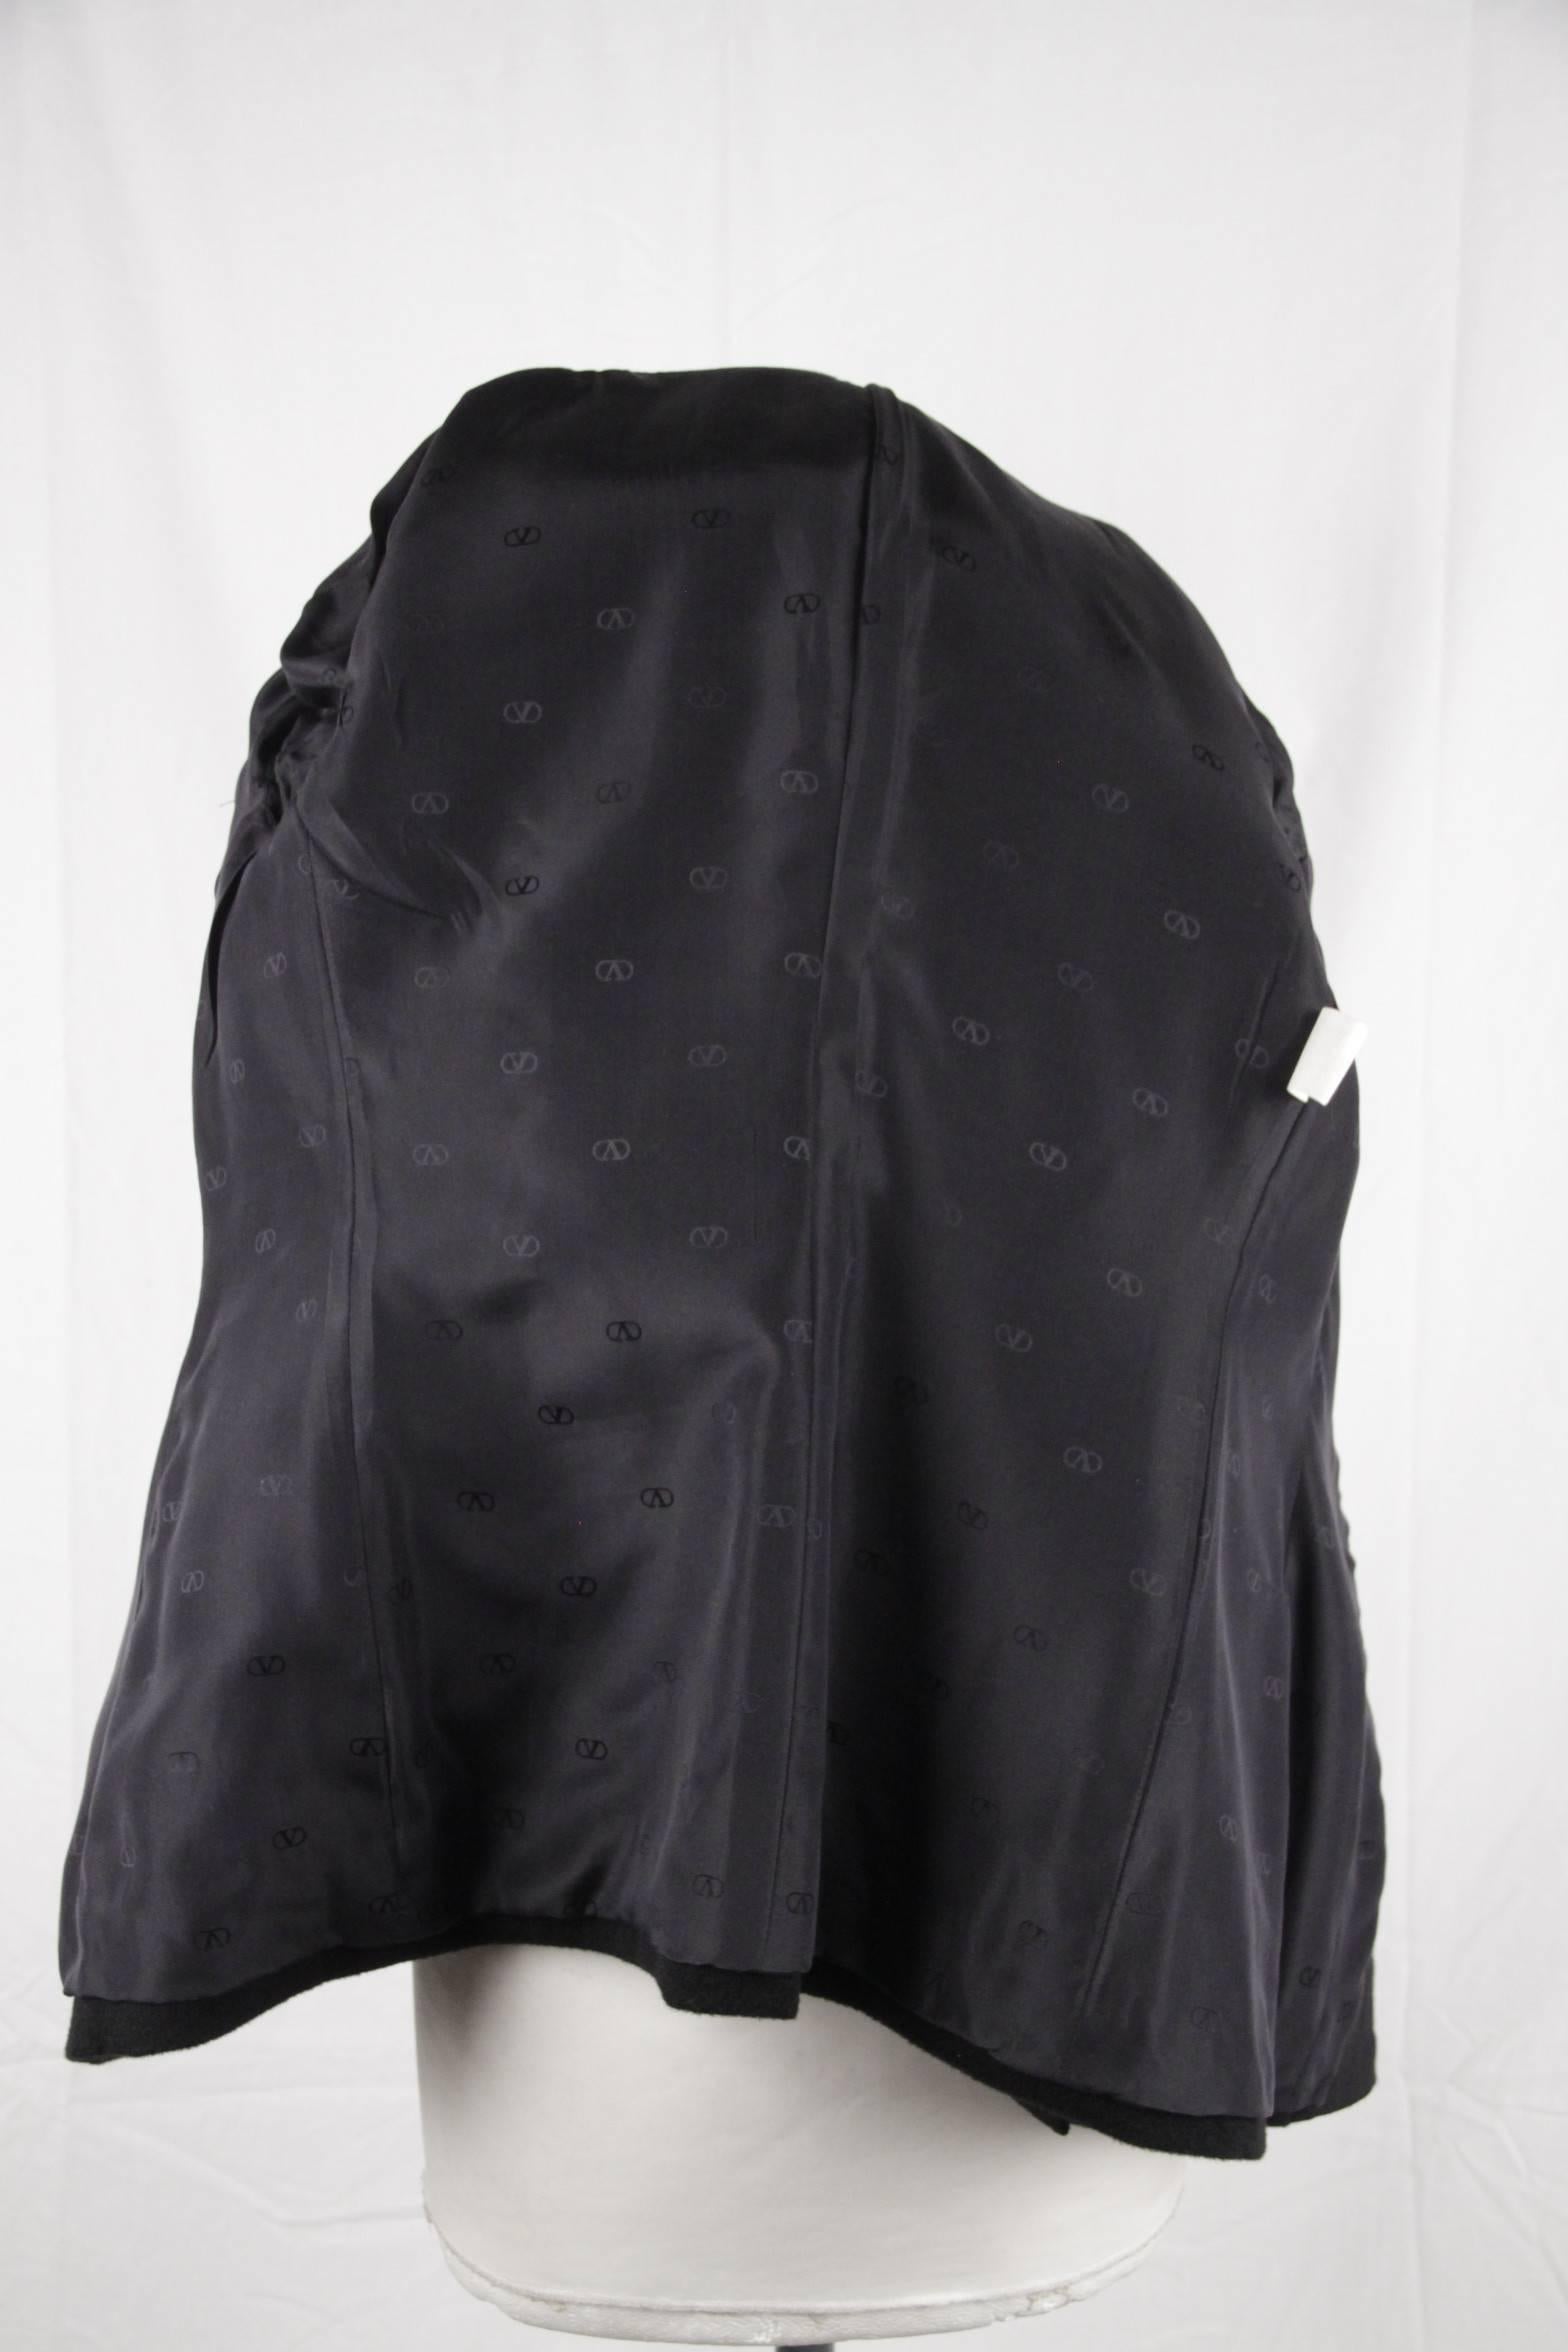 VALENTINO BOUTIQUE Vintage Black Wool BLAZER Jacket SIZE 6 GT 3